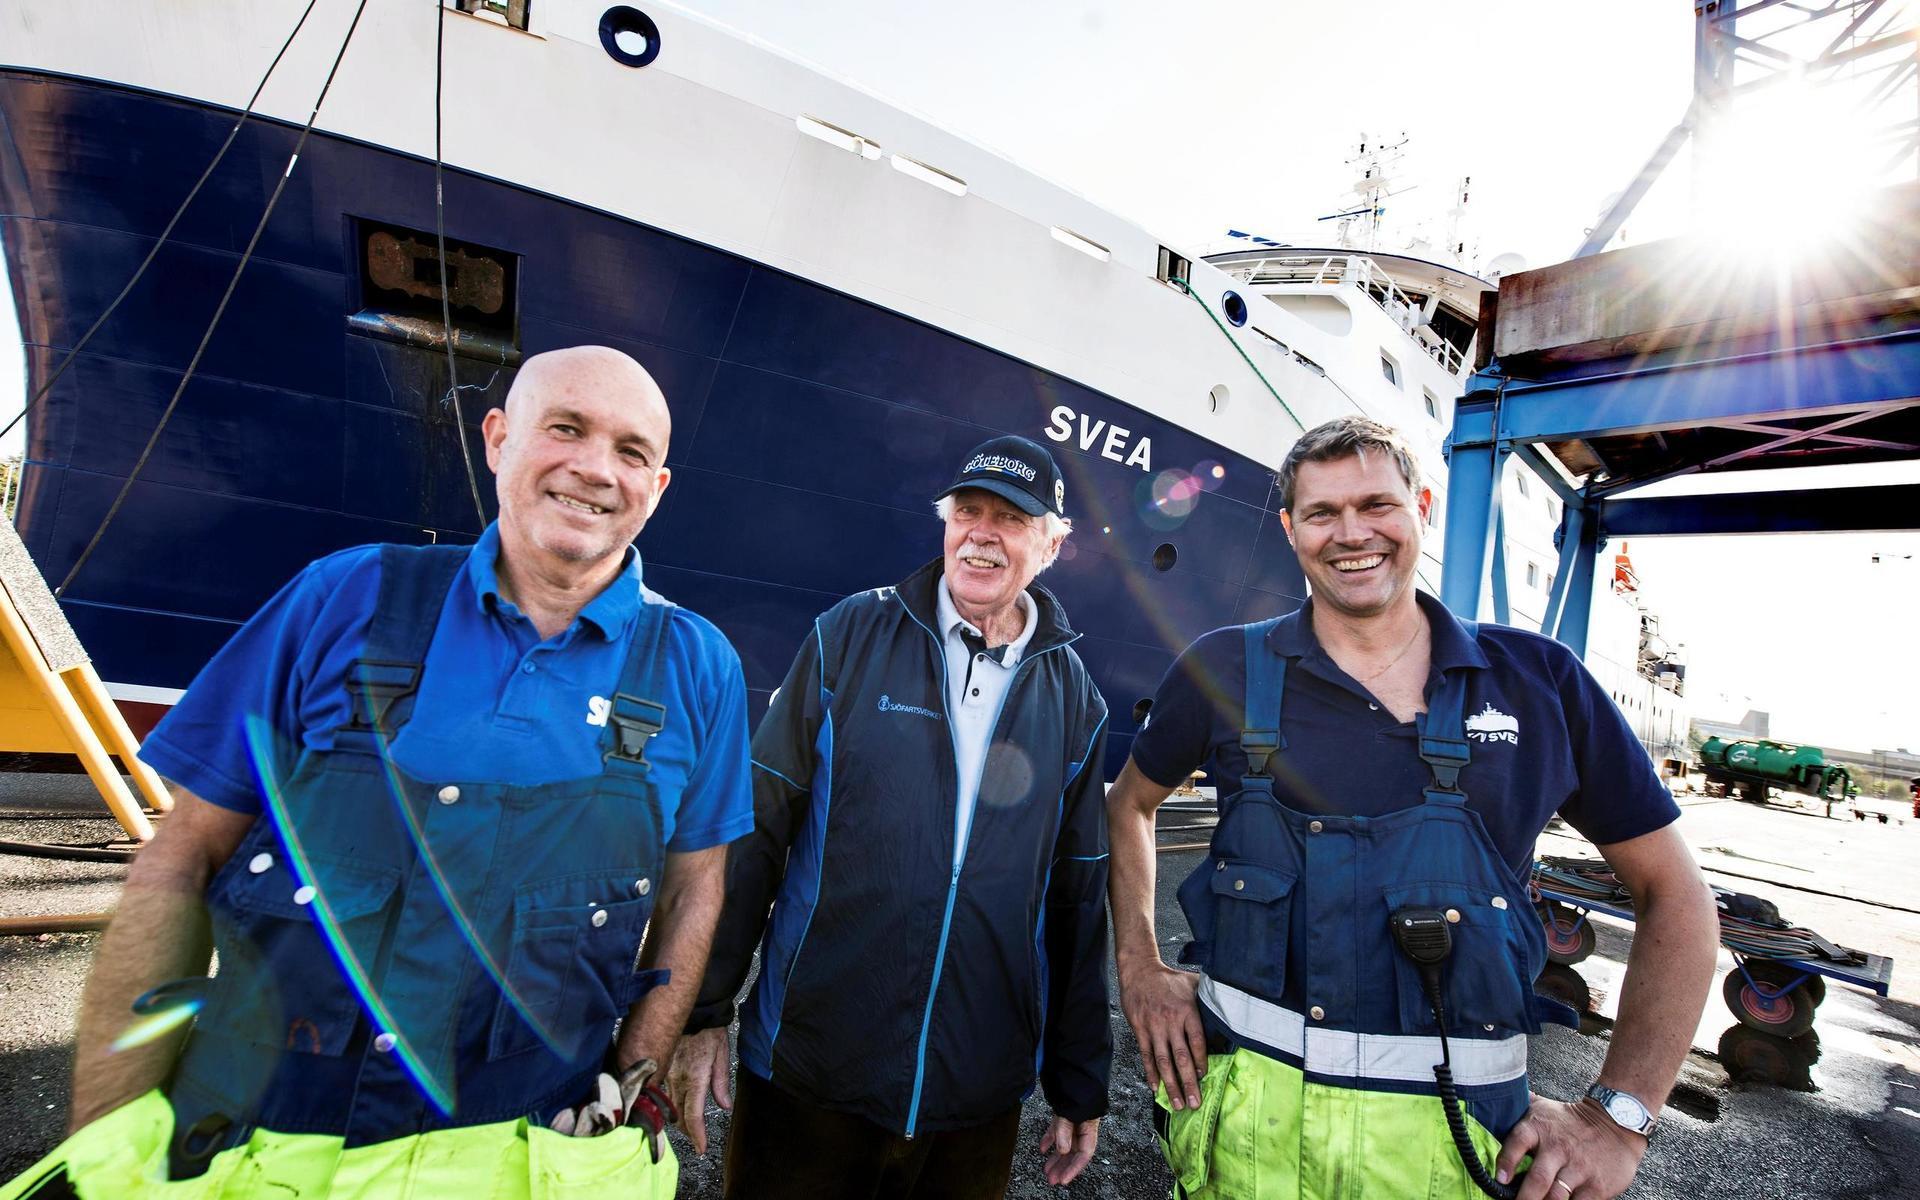 Pristagaren med Micael Öst och Per-Johan Mellberg som är trålmästare på forskningsfartyget Svea som ligger på varv i Falkenberg. Besättningen har deltagit i fyrkamp som arrangerats i land av Lasse.